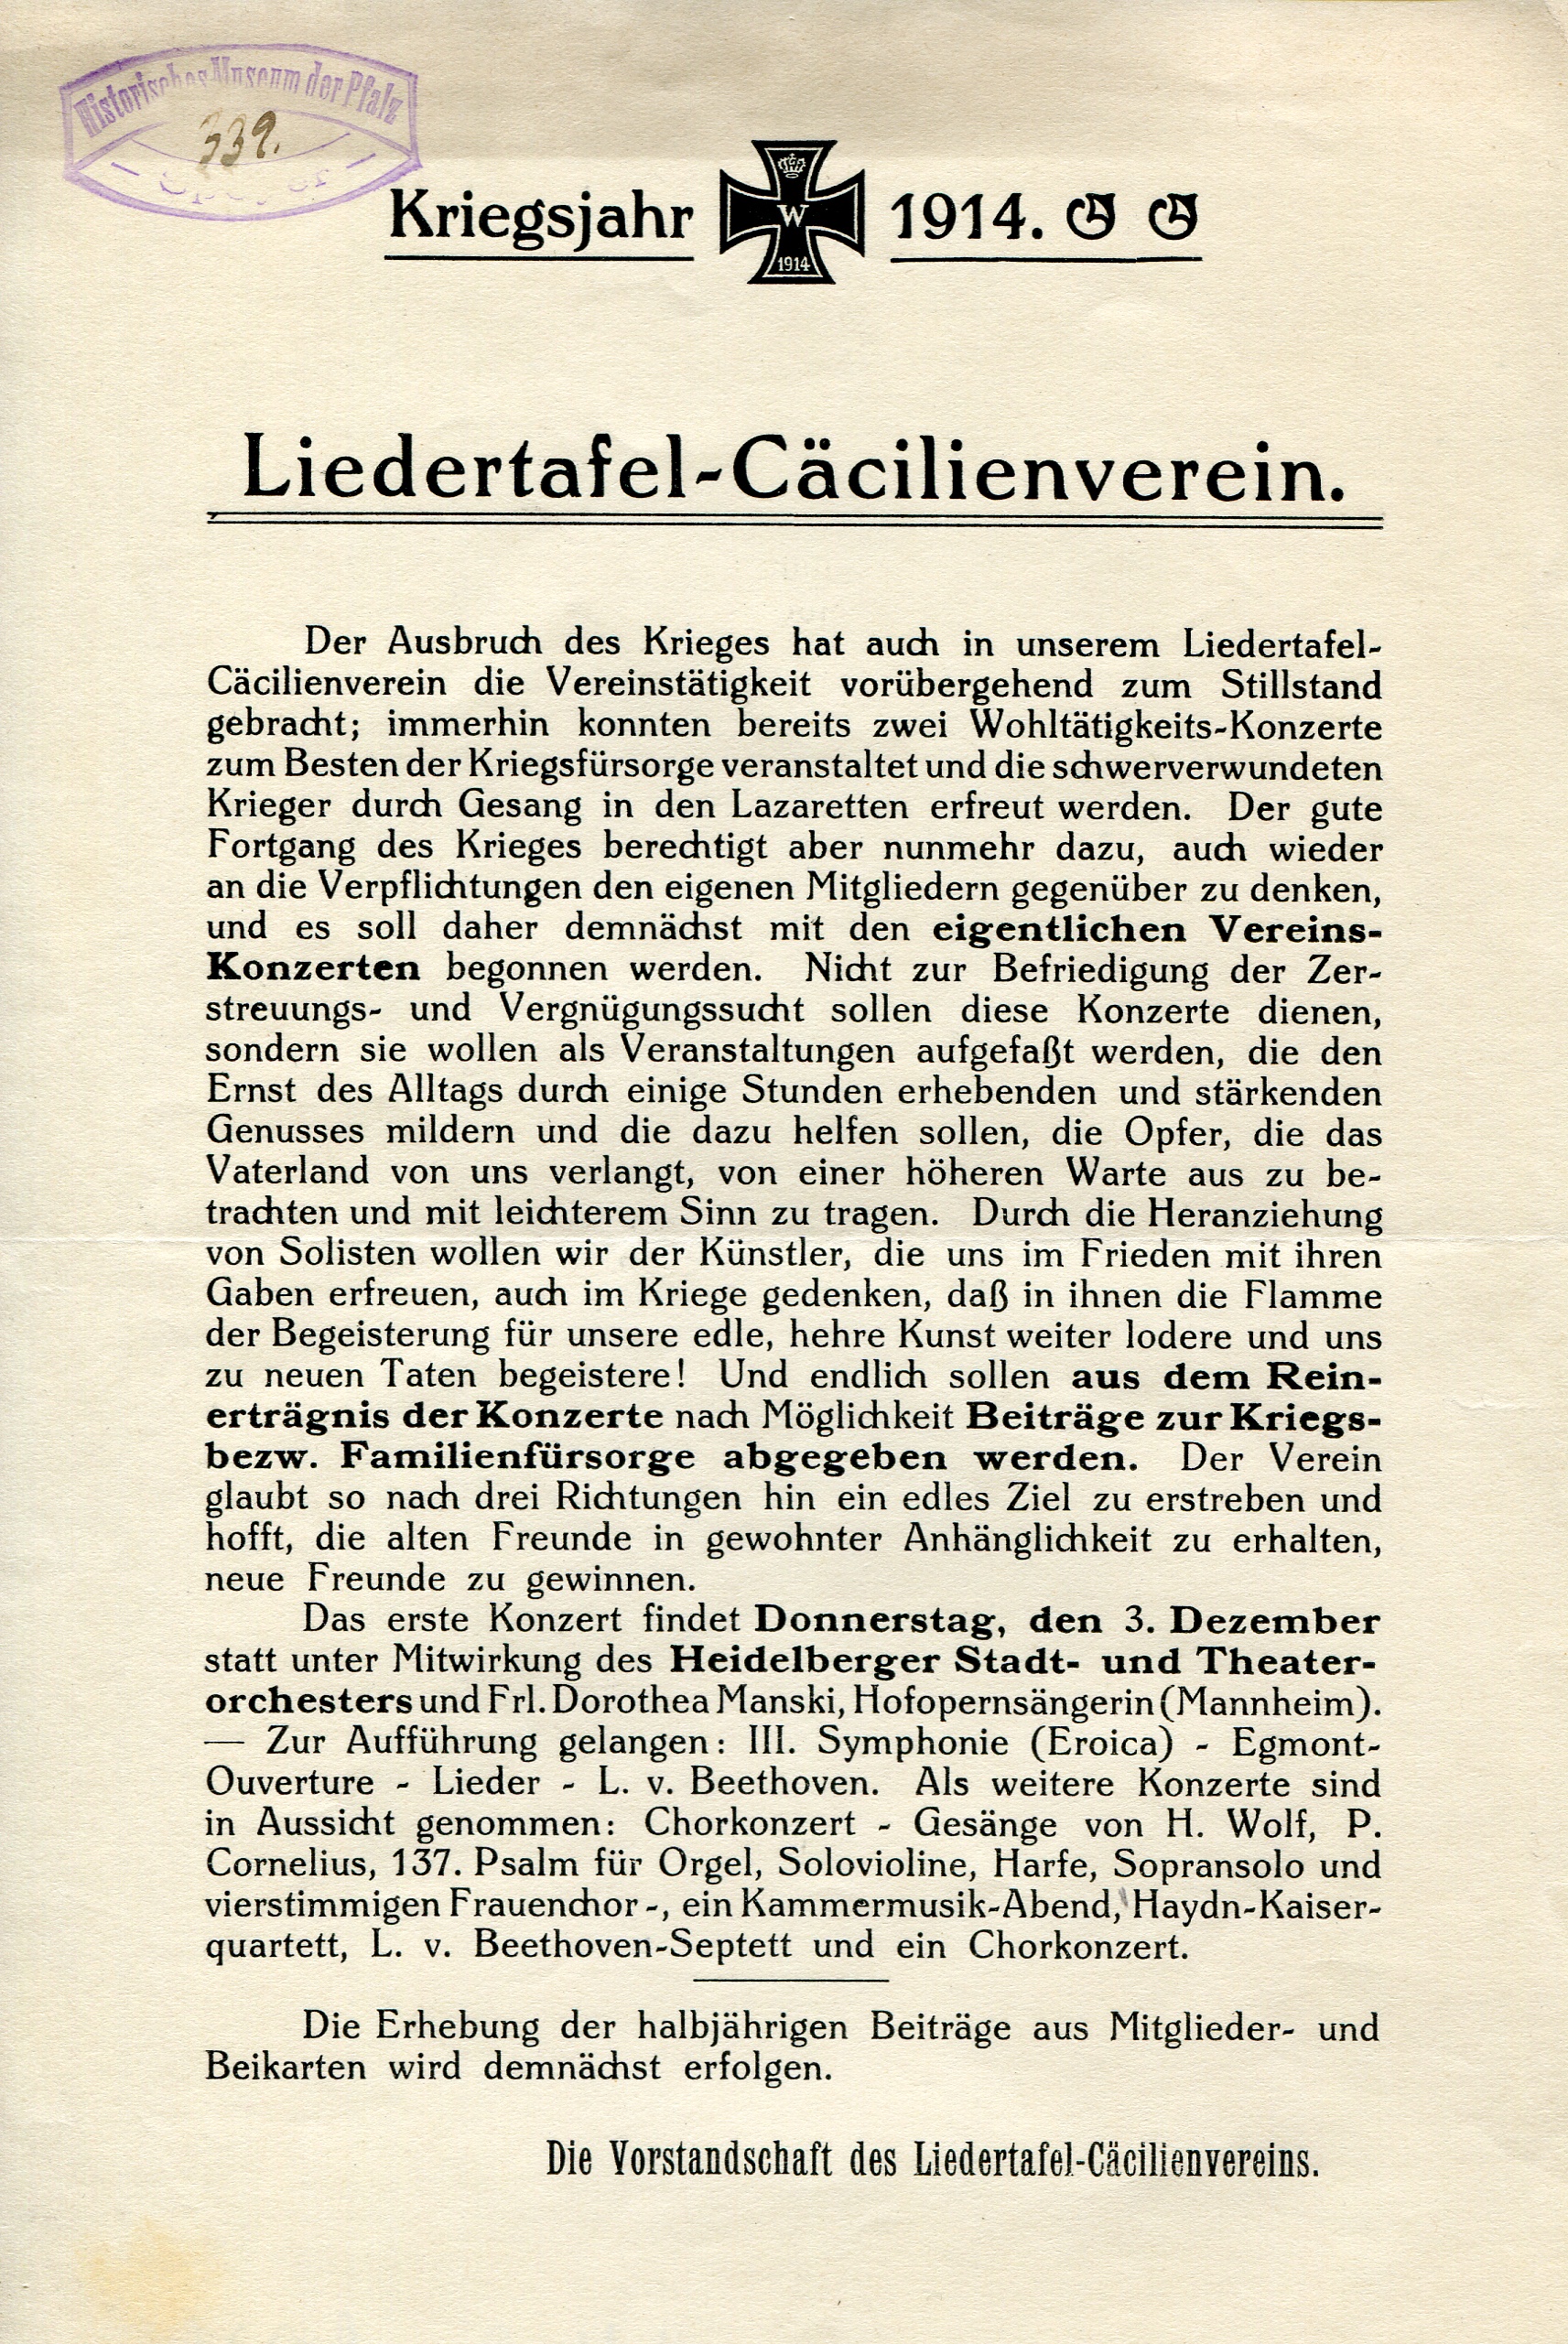 Informationsbrief "Liedertafel-Cäcilienverein" (Historisches Museum der Pfalz, Speyer CC BY-NC-ND)